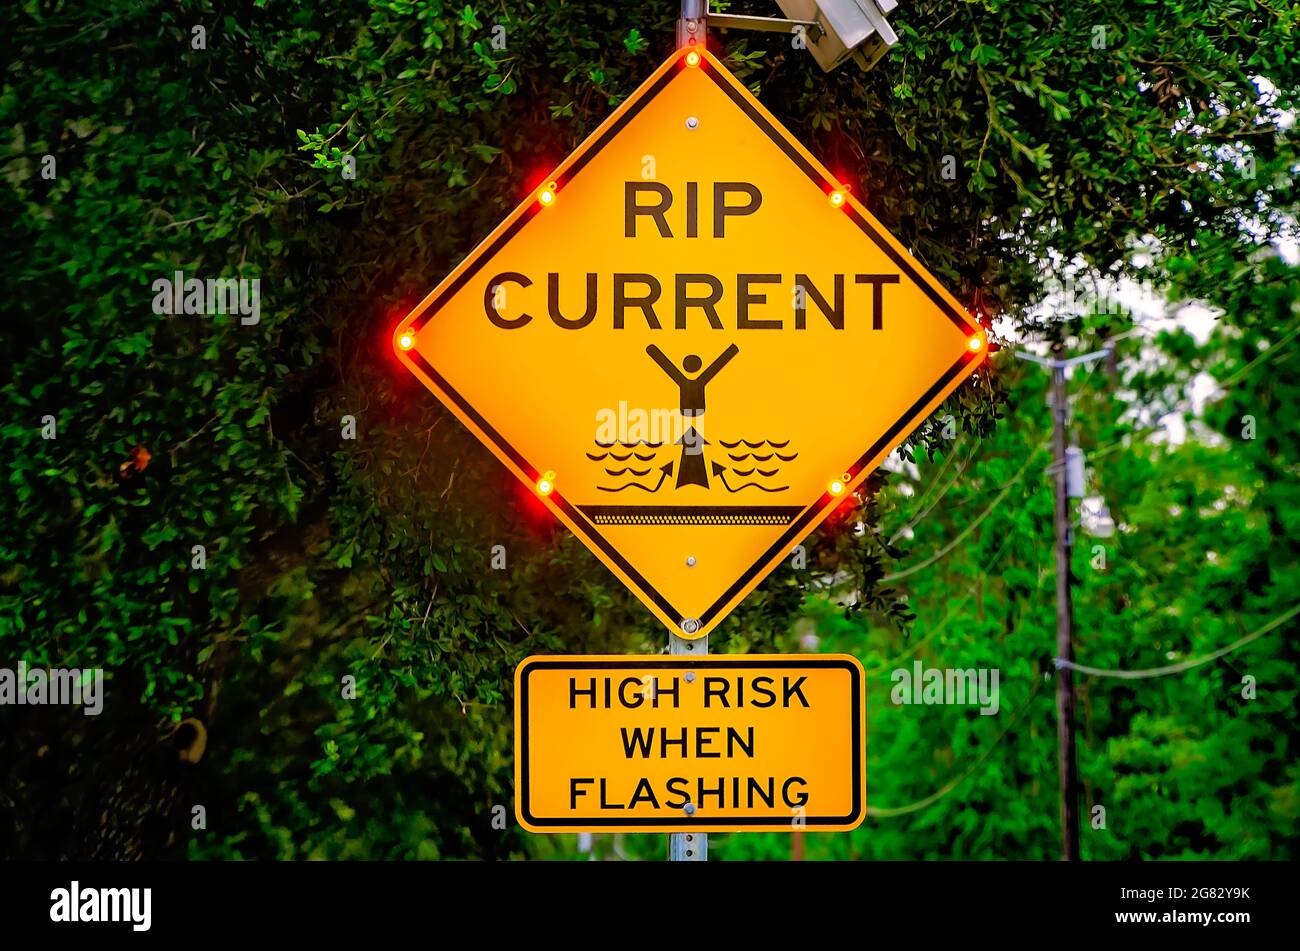 Am 7. Juli 2021 in Dauphin Island, Alabama, blinkt ein Schild mit Stromreißern, um die Besucher vor einem hohen Risiko von Stromreißströmen zu warnen. Stockfoto